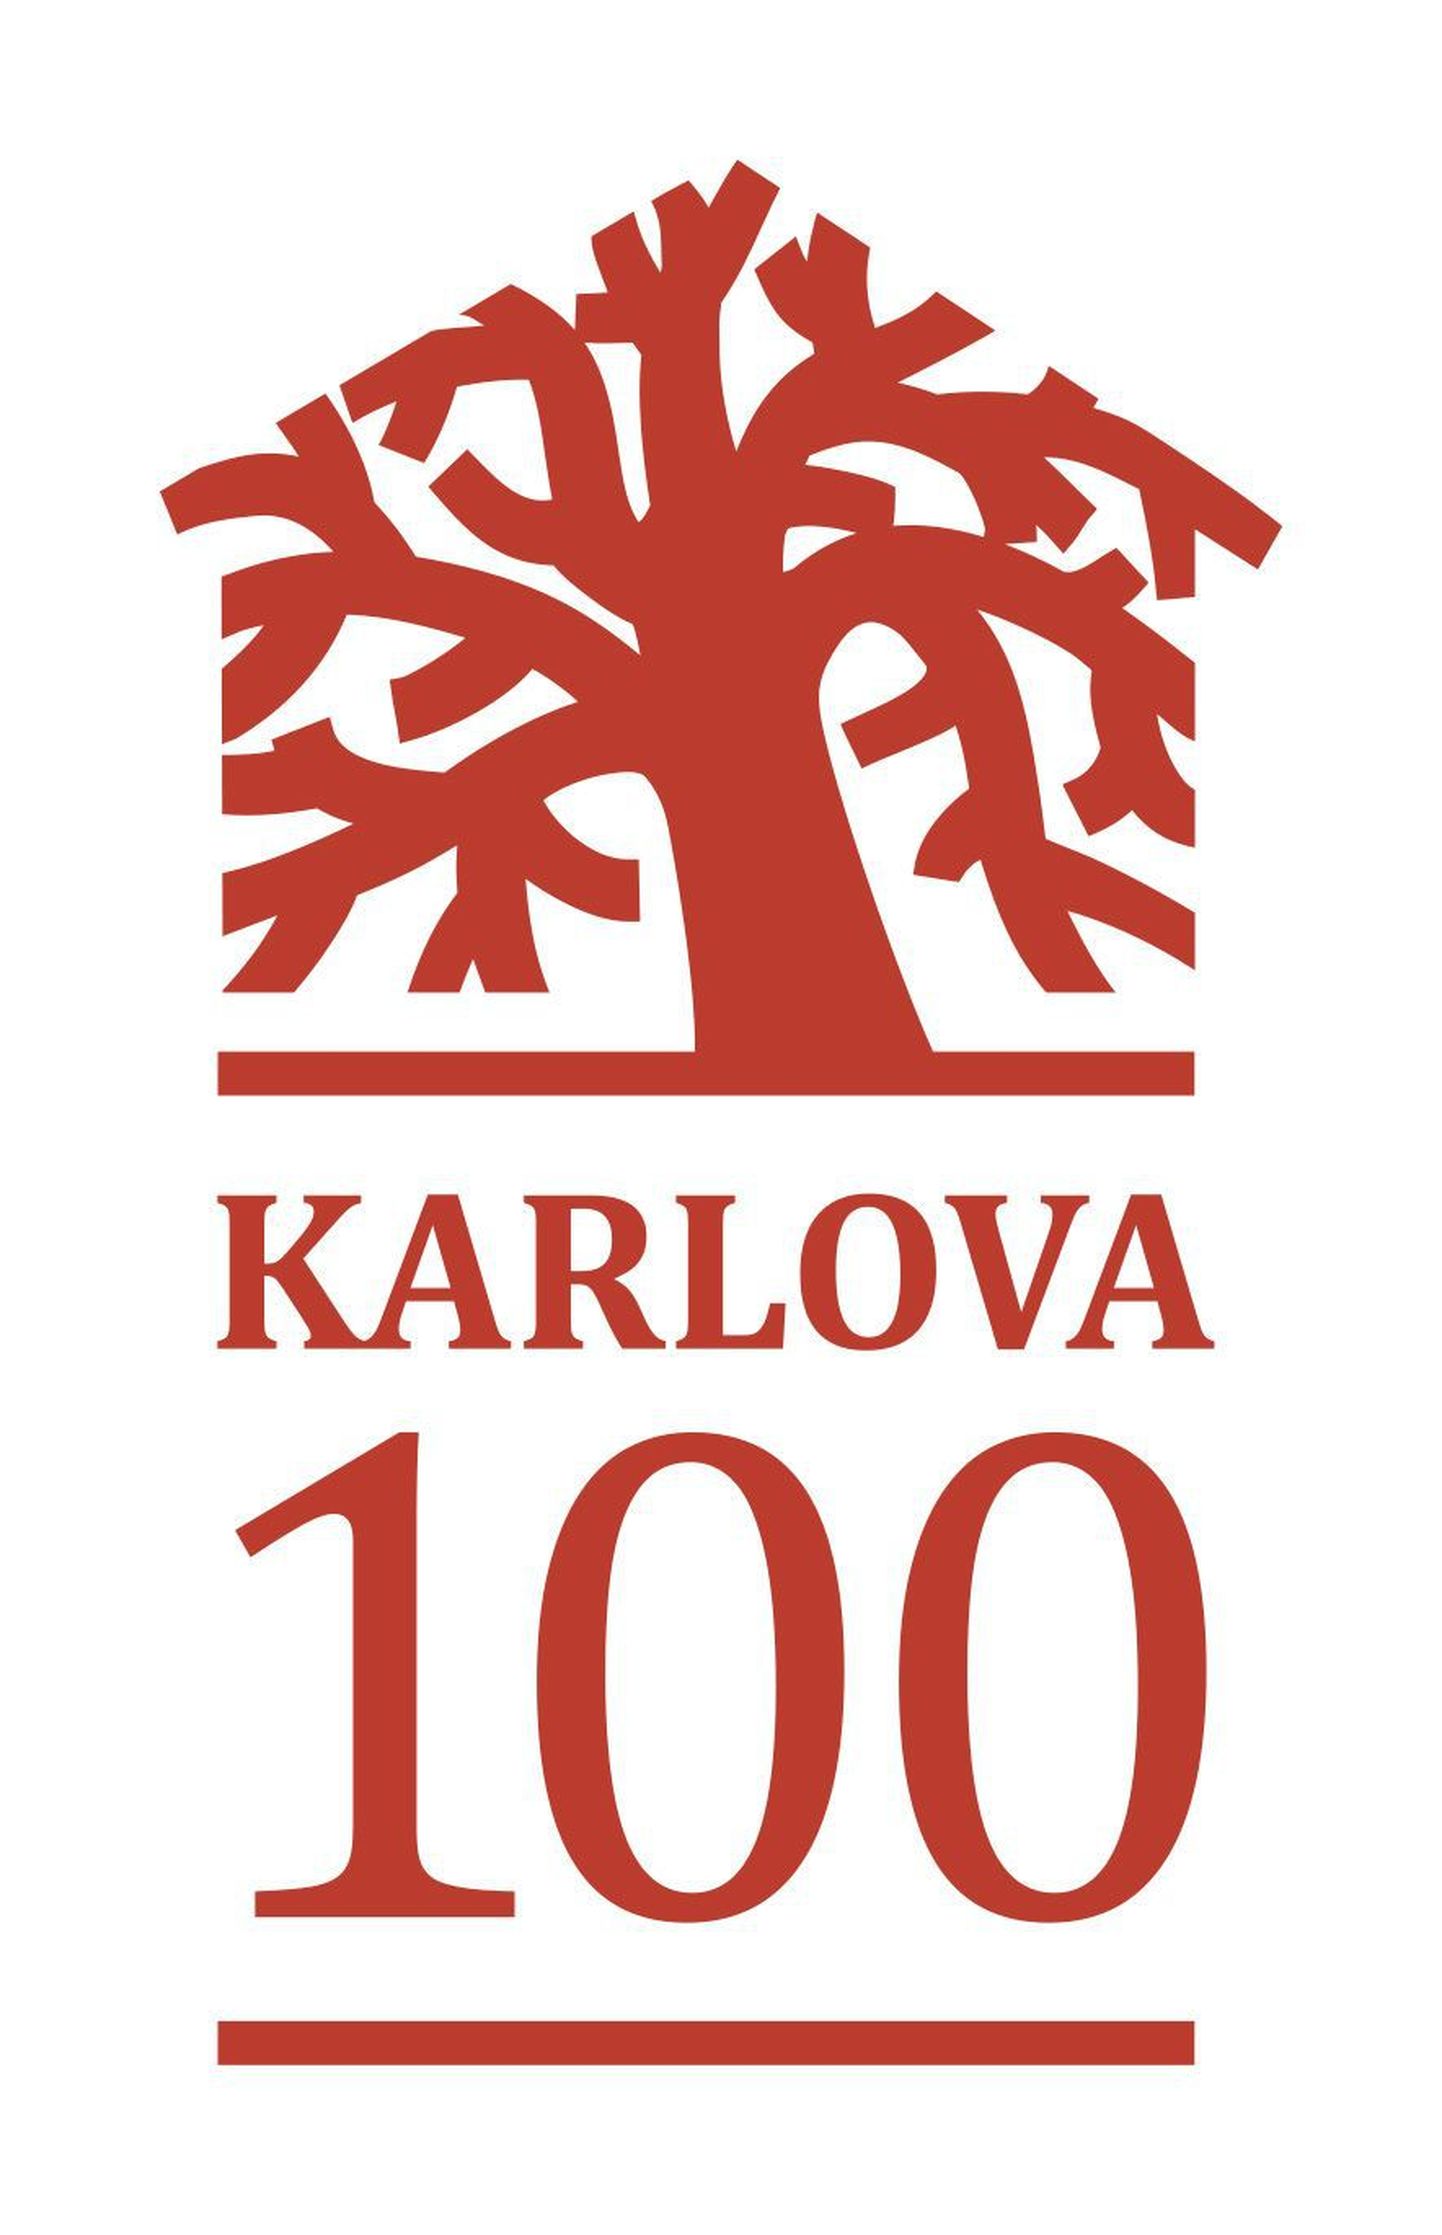 Valminud on Karlova 100 logo, mille autor on Vambola Moldov.